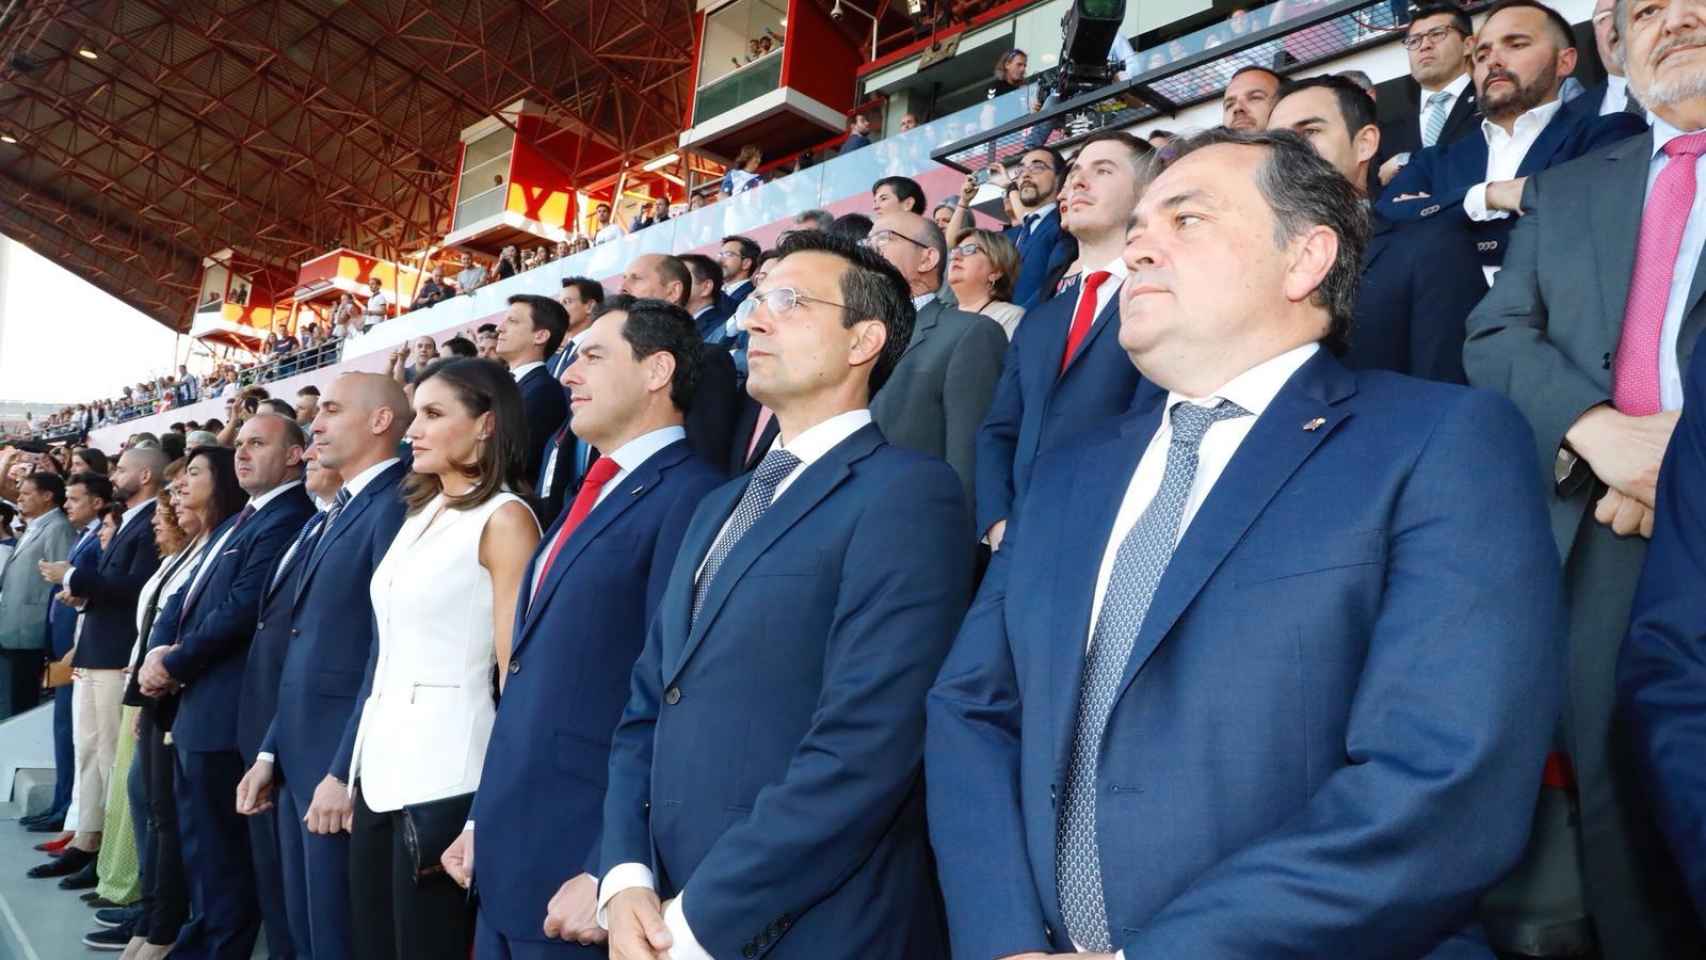 La reina Letizia con Luis Rubiales, presidente de la Asociación de Futbolistas Españoles y su derecha y con Juan Manuel Moreno Bonilla, presidente de la Junta de Andalucía, a su izquierda.